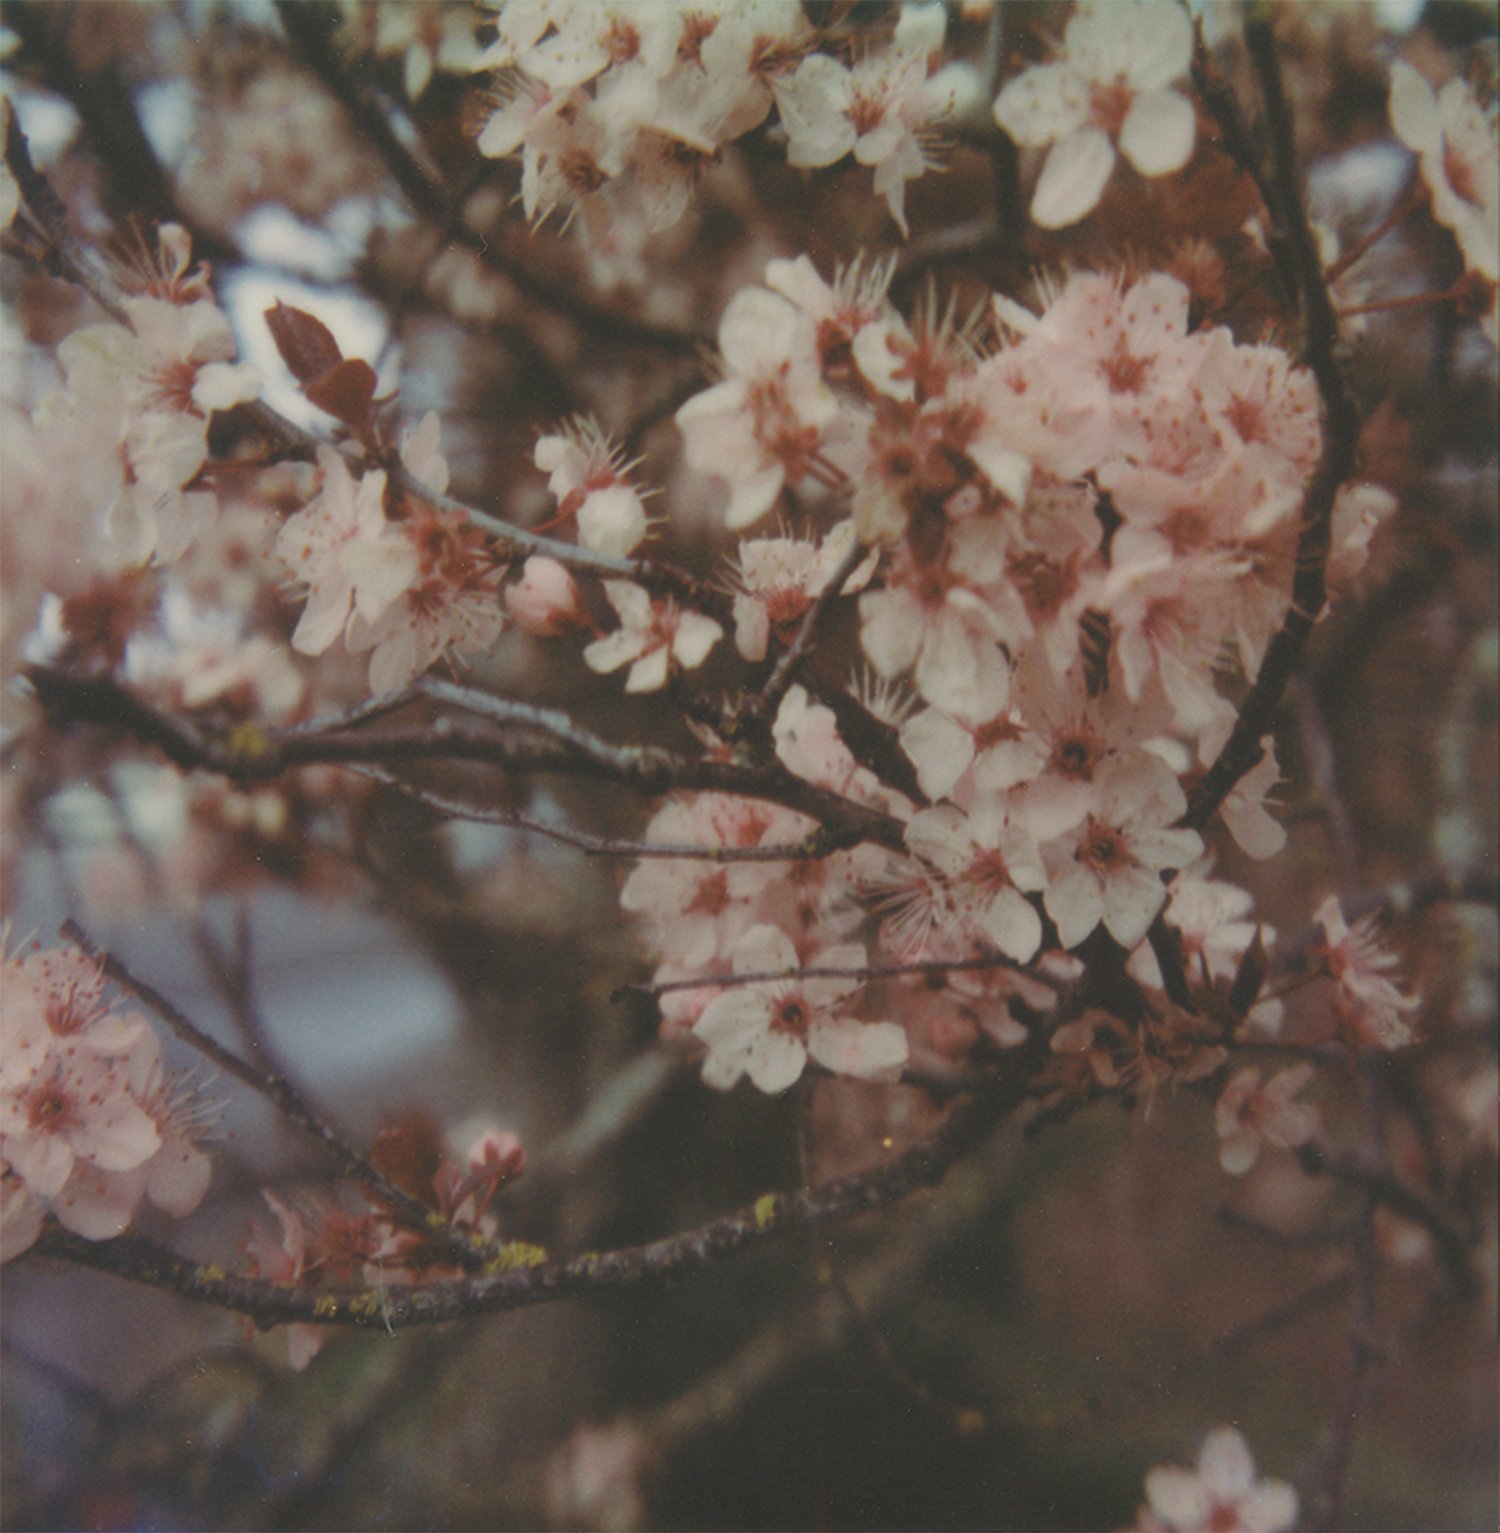  Cherry blossoms Polaroid SLR680 